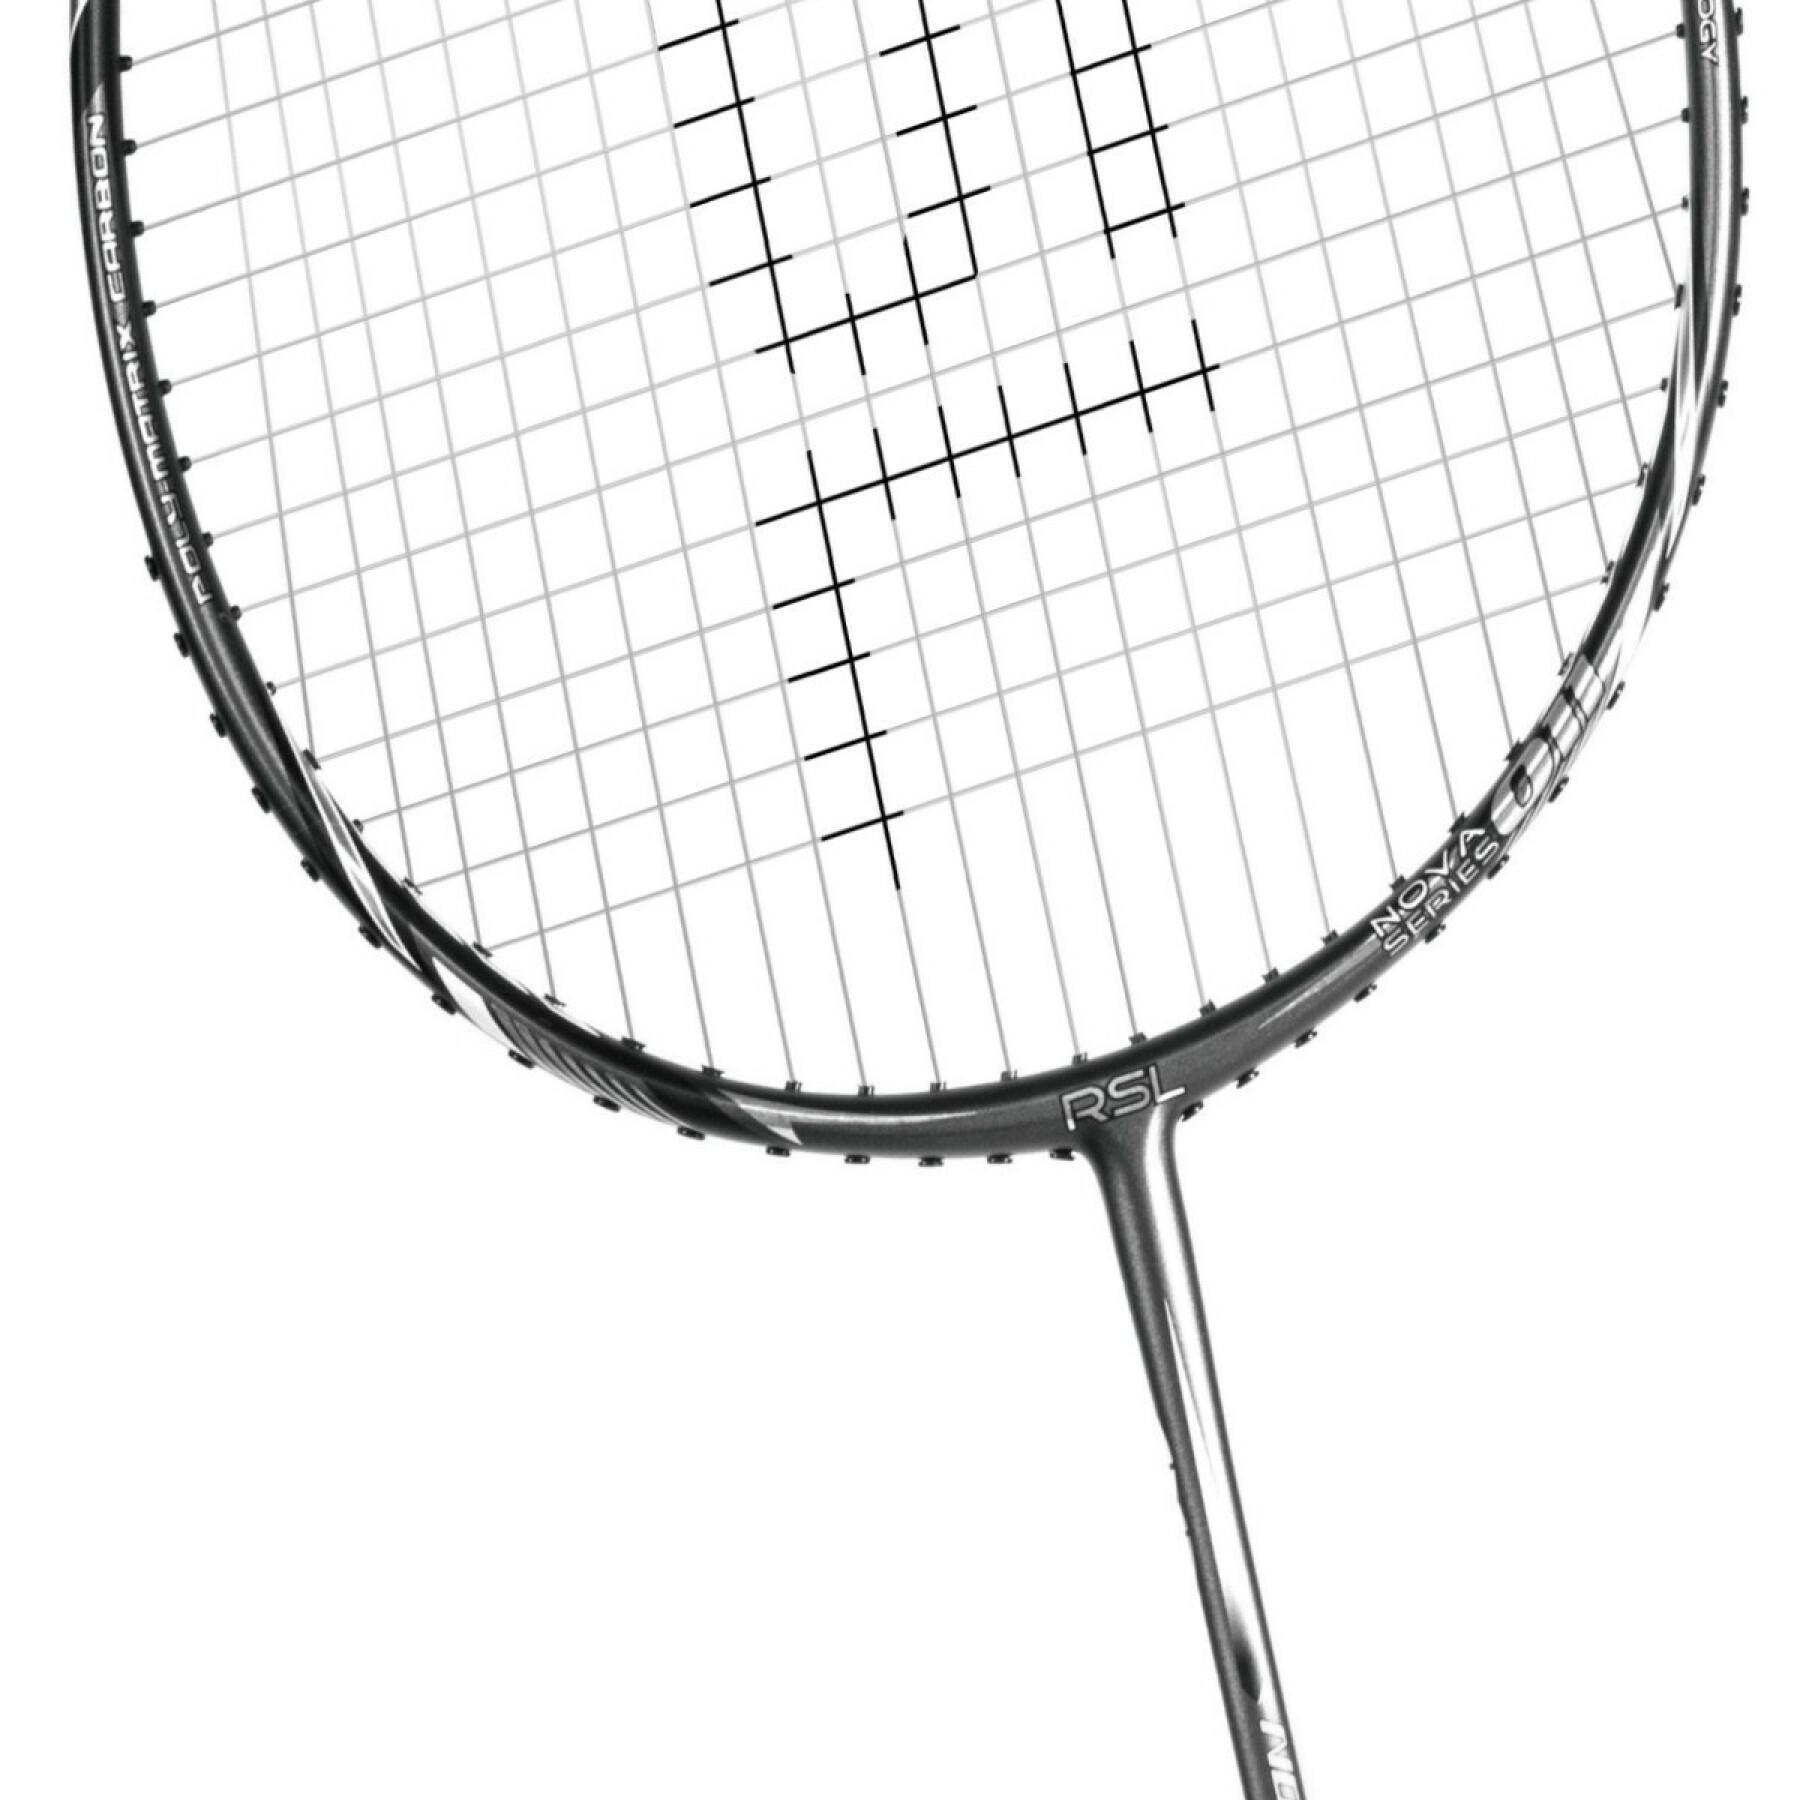 Racchetta da badminton RSL Nova